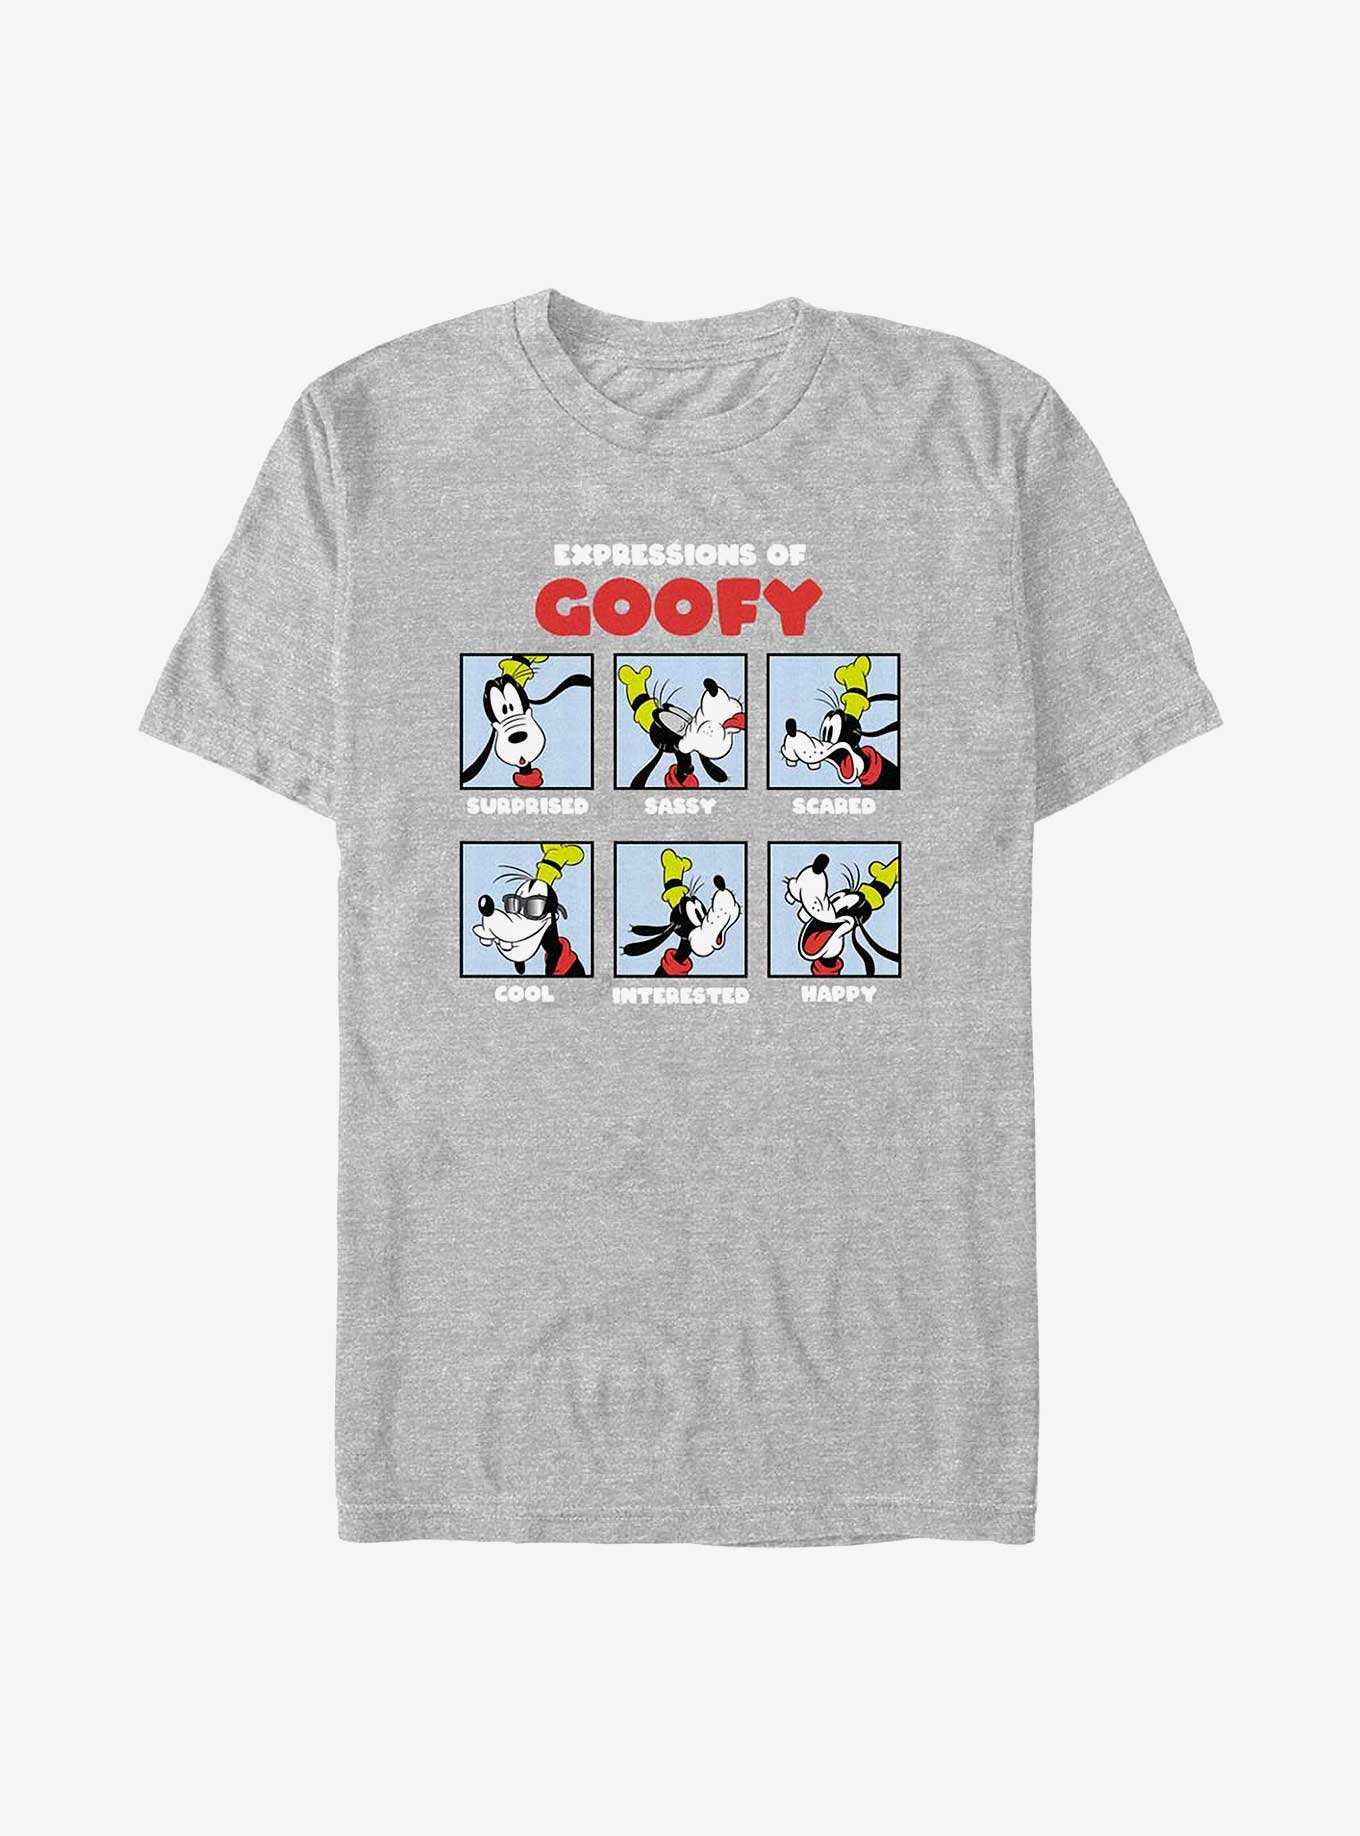 Disney Goofy Expressions Of Goofy T-Shirt, , hi-res